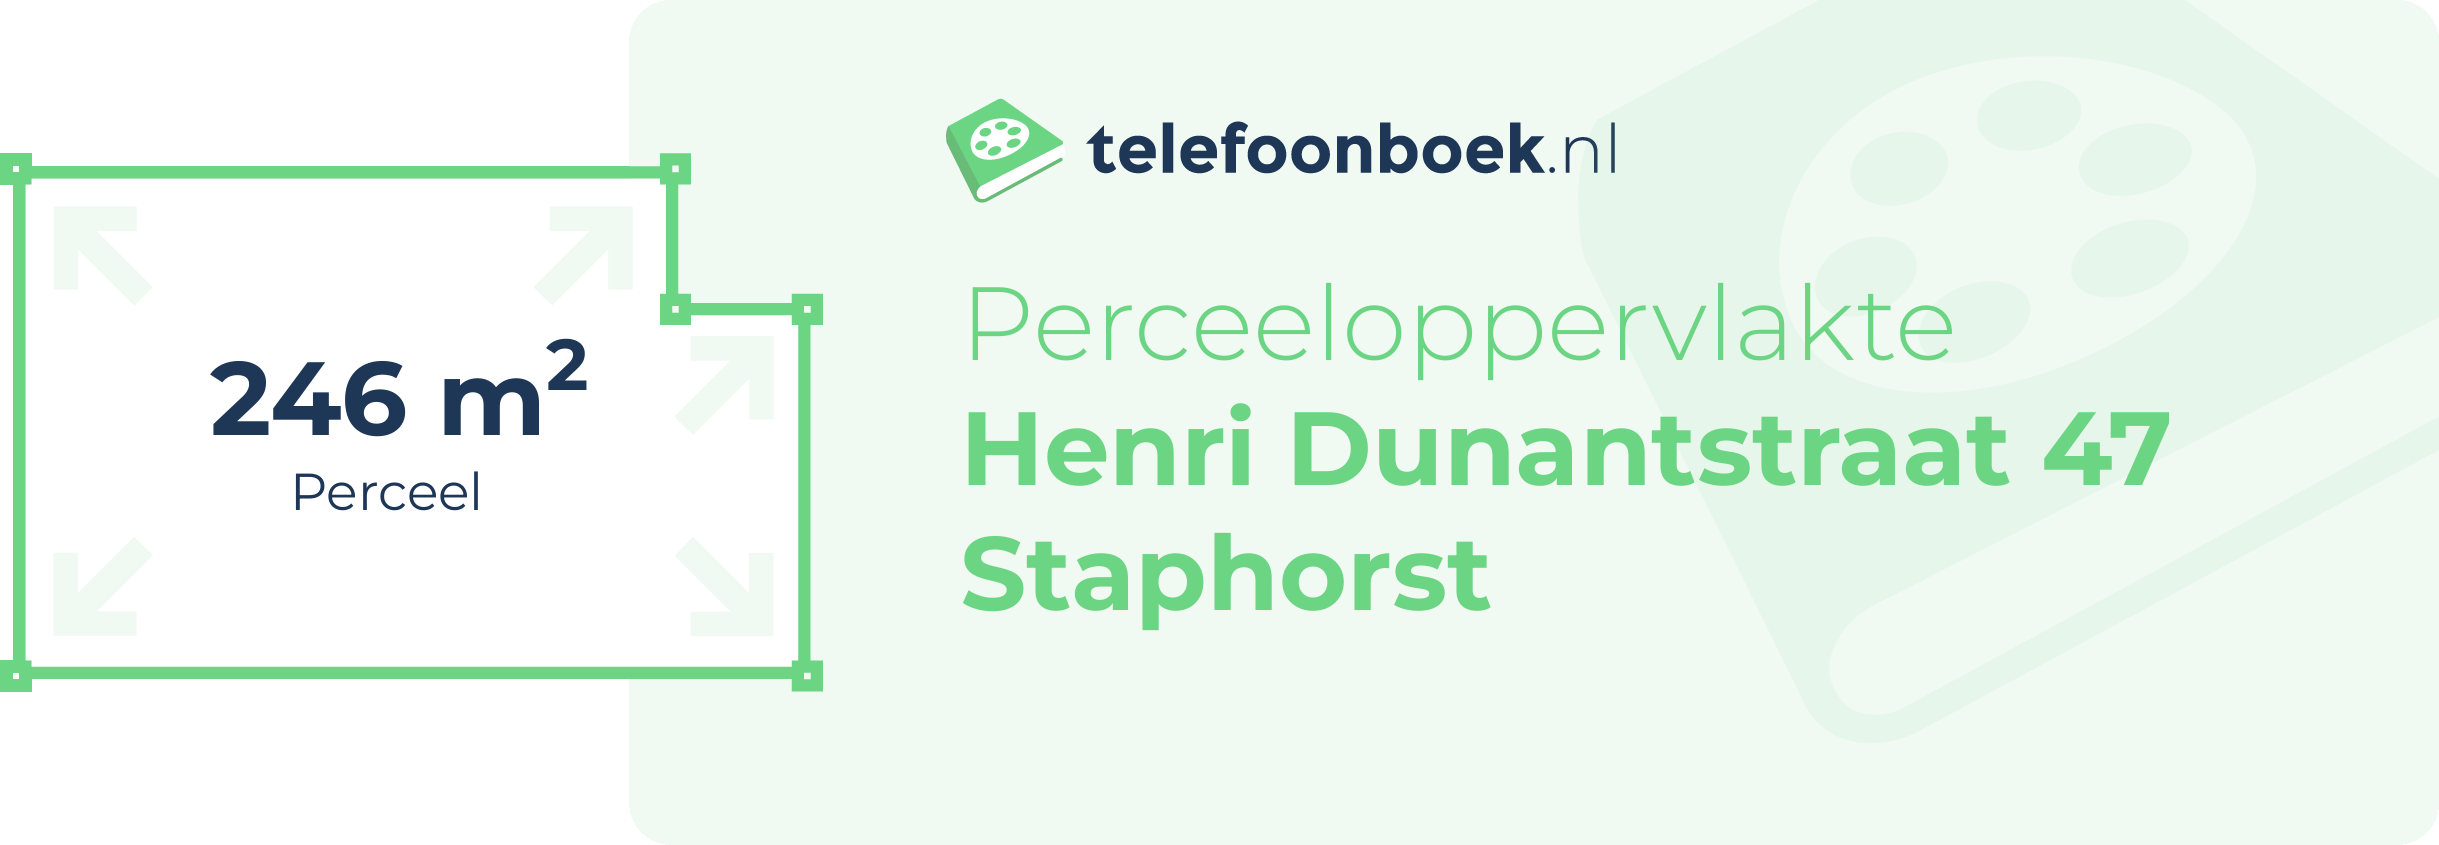 Perceeloppervlakte Henri Dunantstraat 47 Staphorst